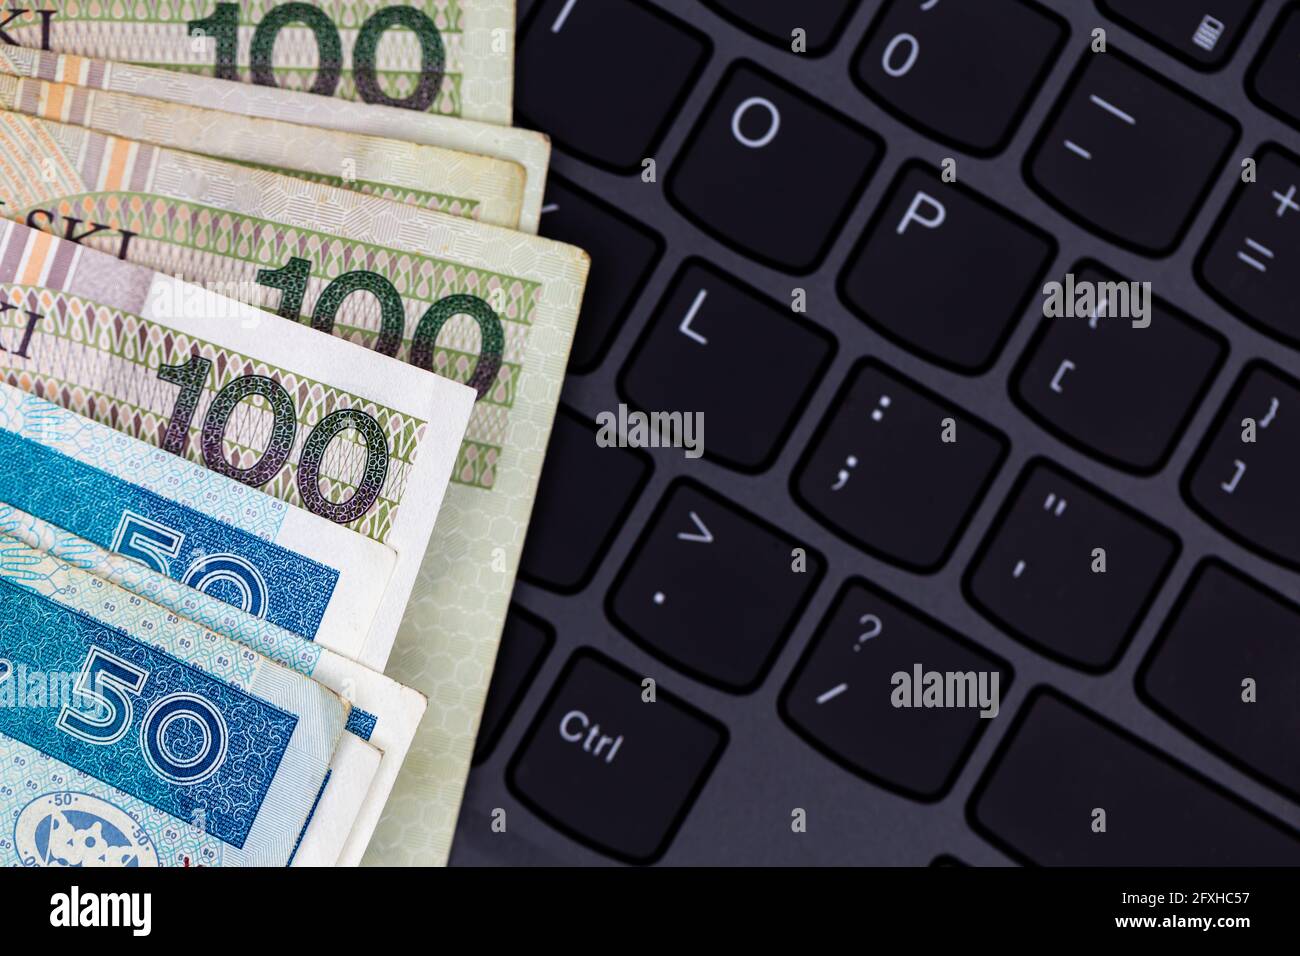 Un set di banconote da 50 e 100 PLN polacche disposte su una tastiera nera per laptop. Foto scattata in condizioni di luce artificiale e soffusa Foto Stock